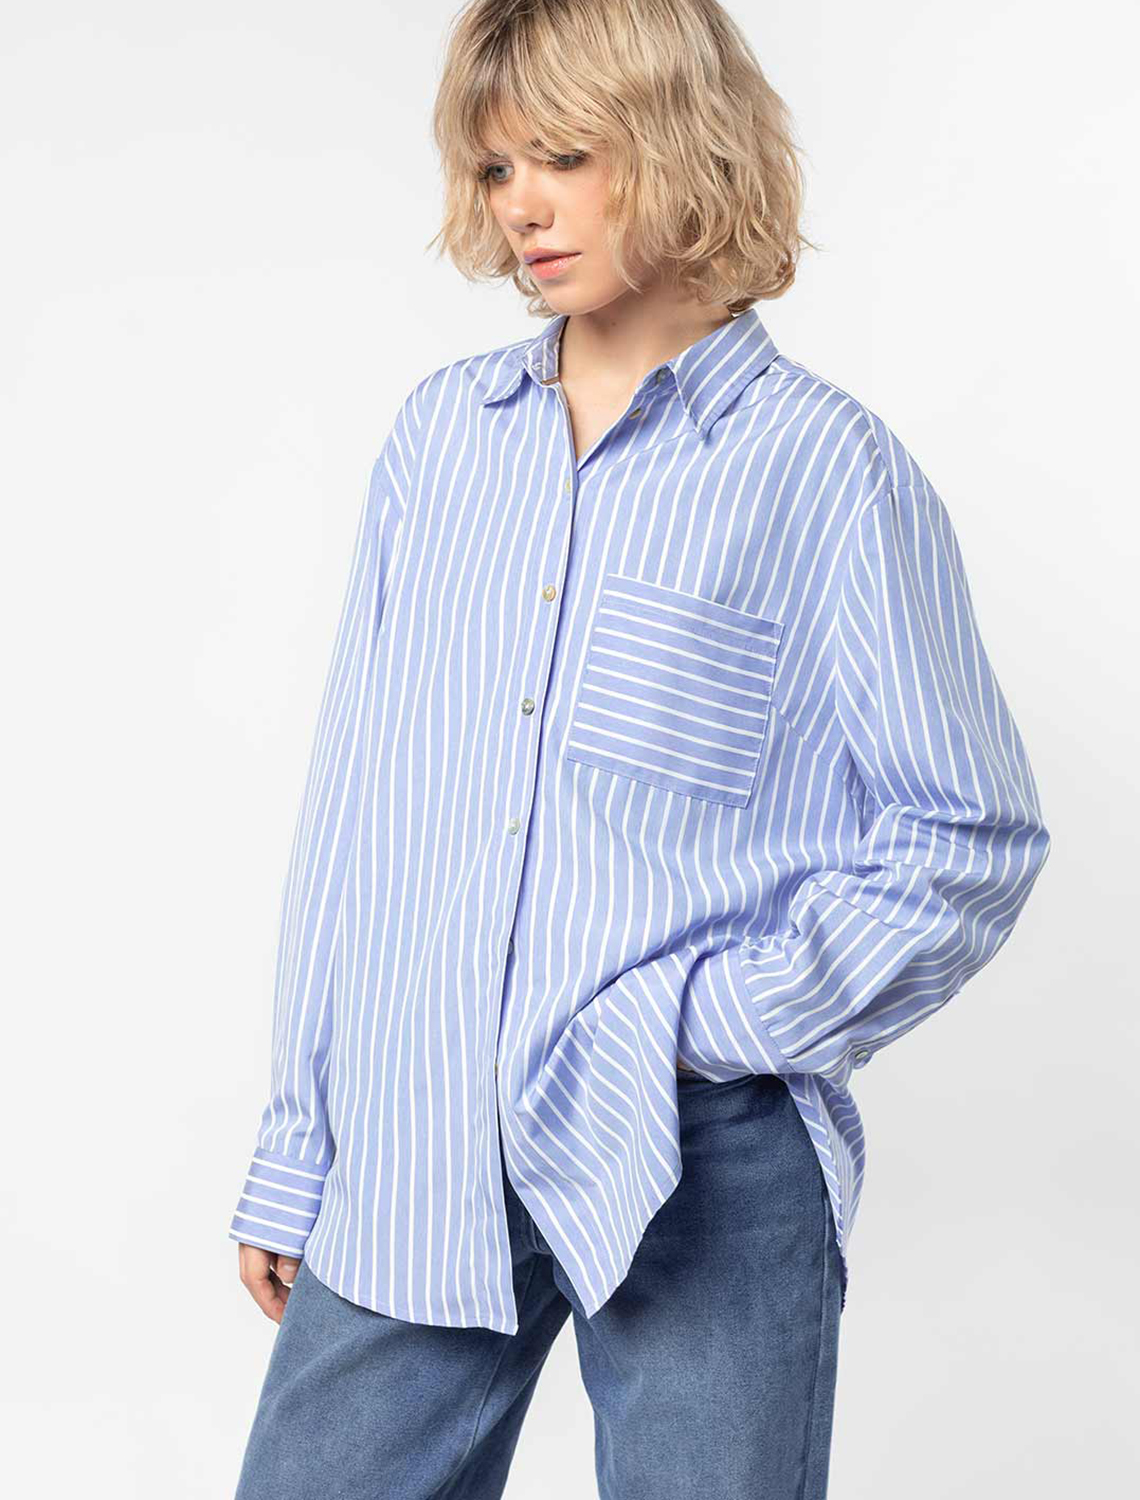 Овер-сайз блузка с пуговицами из натурального перламутра